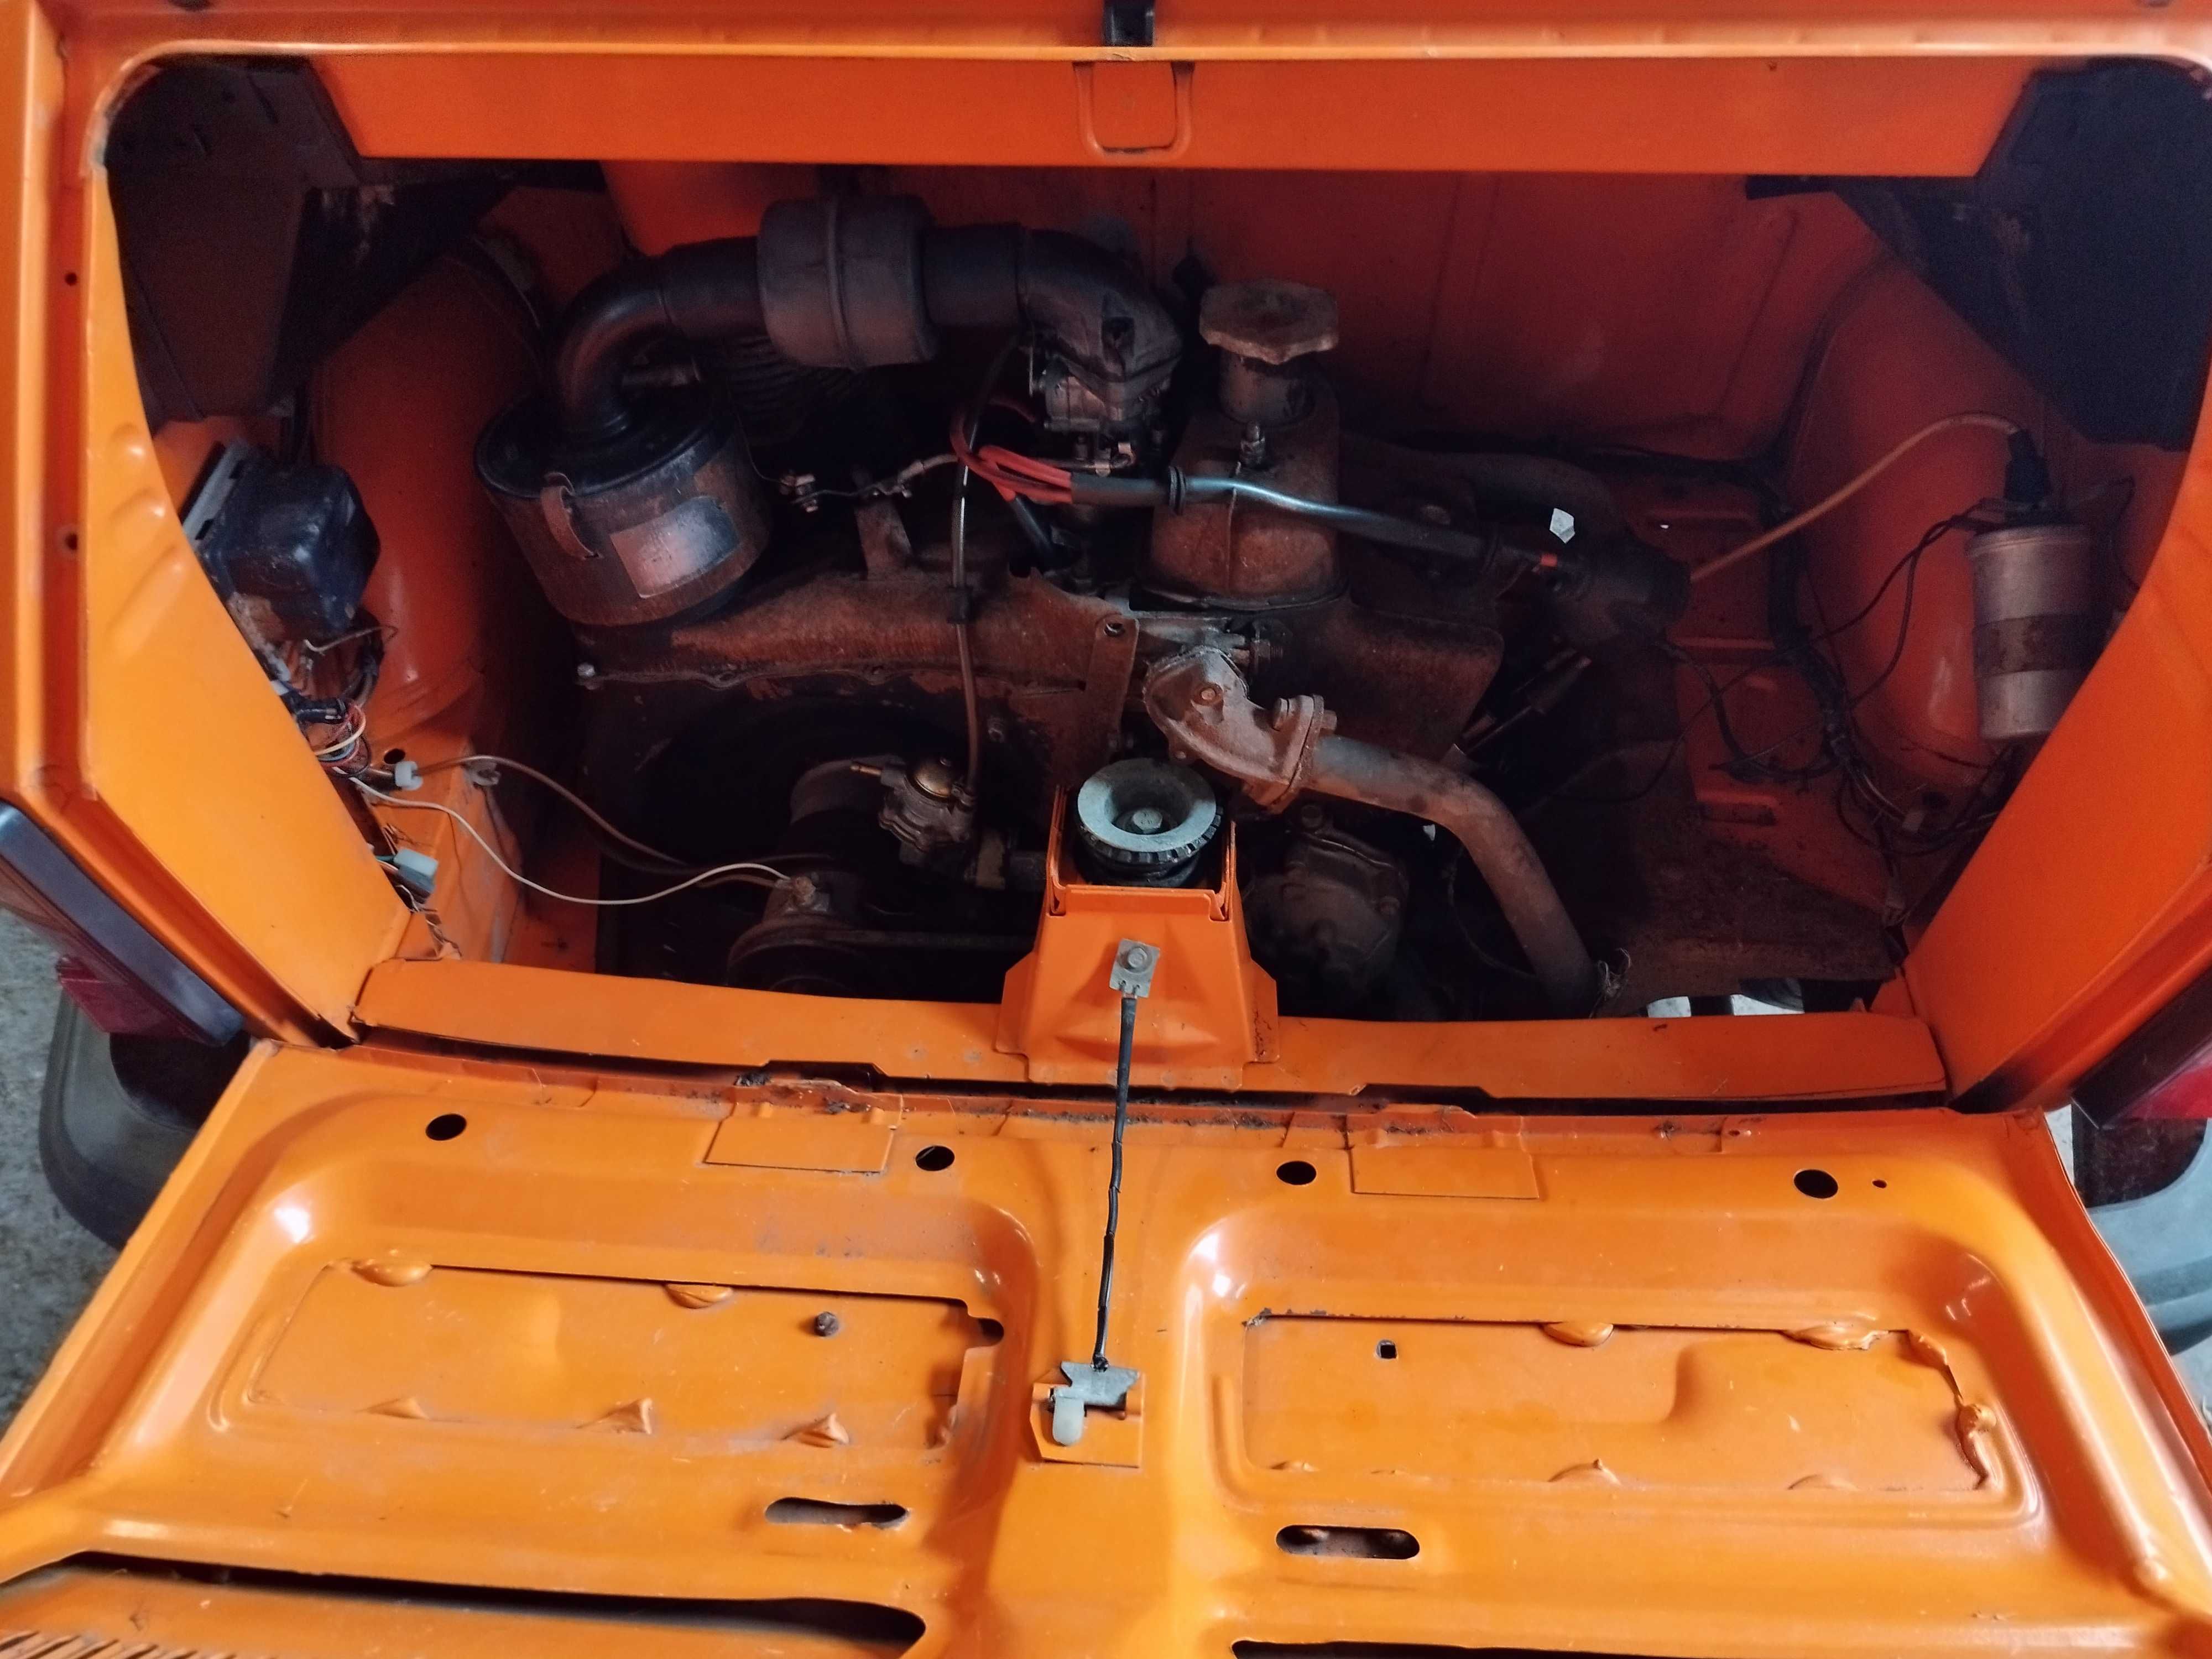 Fiat 126p zabytek oryginał 70 tys. km pomarańczowy 1986rok